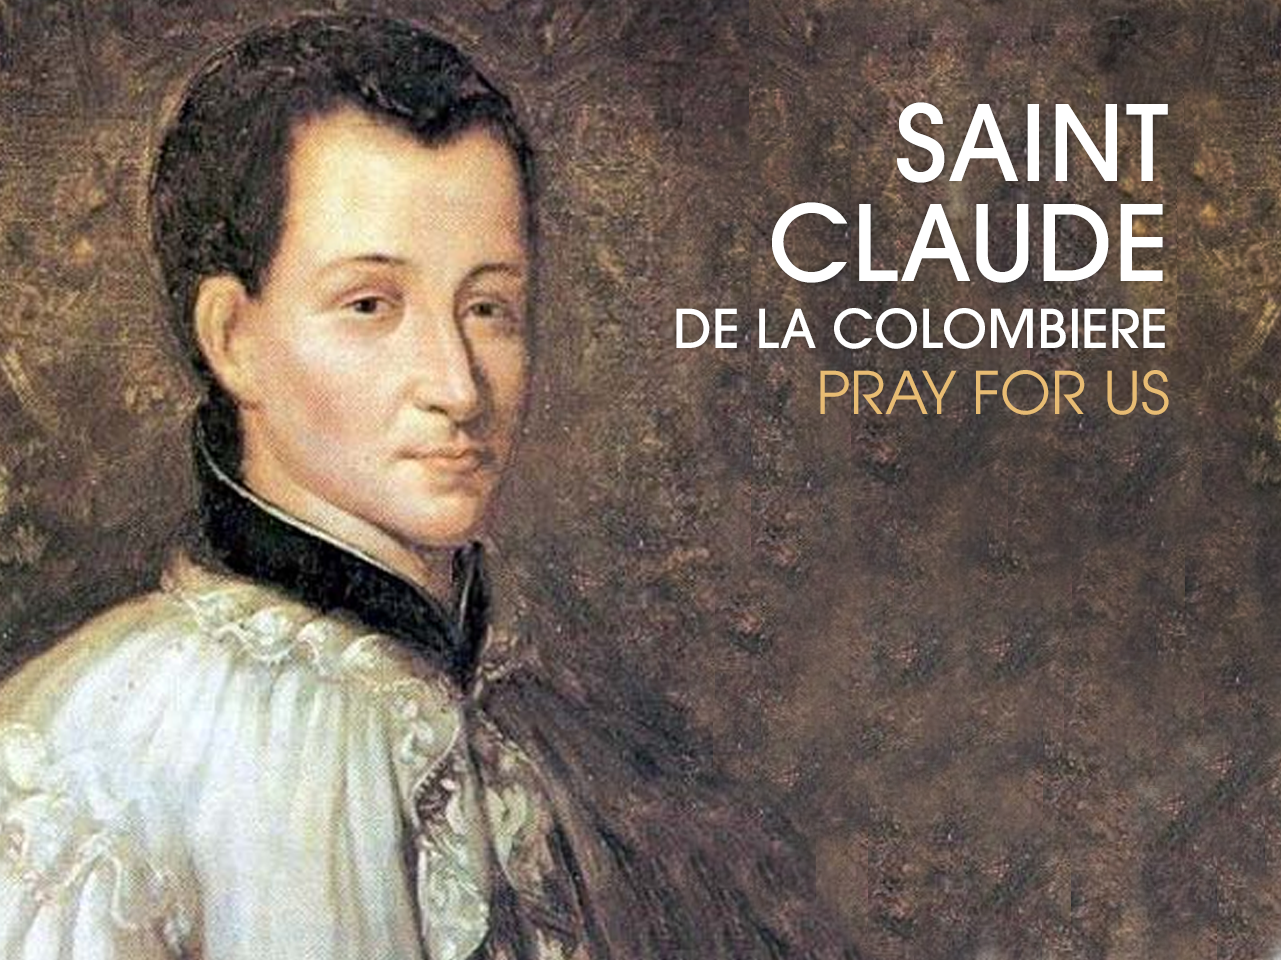 St. Claude de la Colombiere